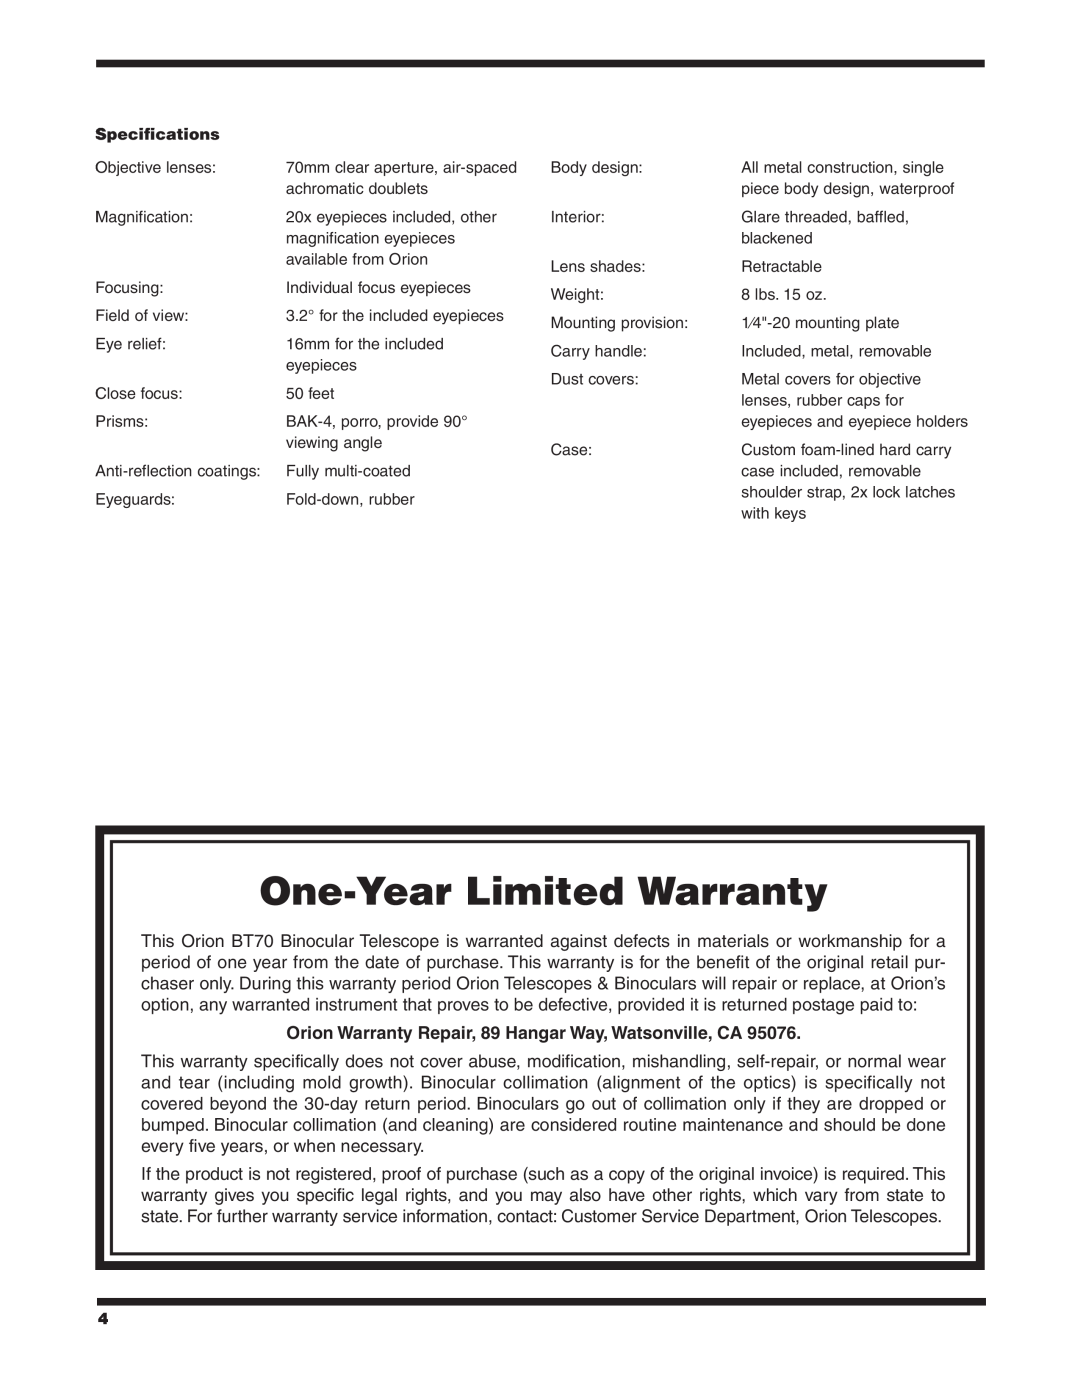 Orion BT70 instruction manual Orion Warranty Repair, 89 Hangar Way, Watsonville, CA, One-Year Limited Warranty 